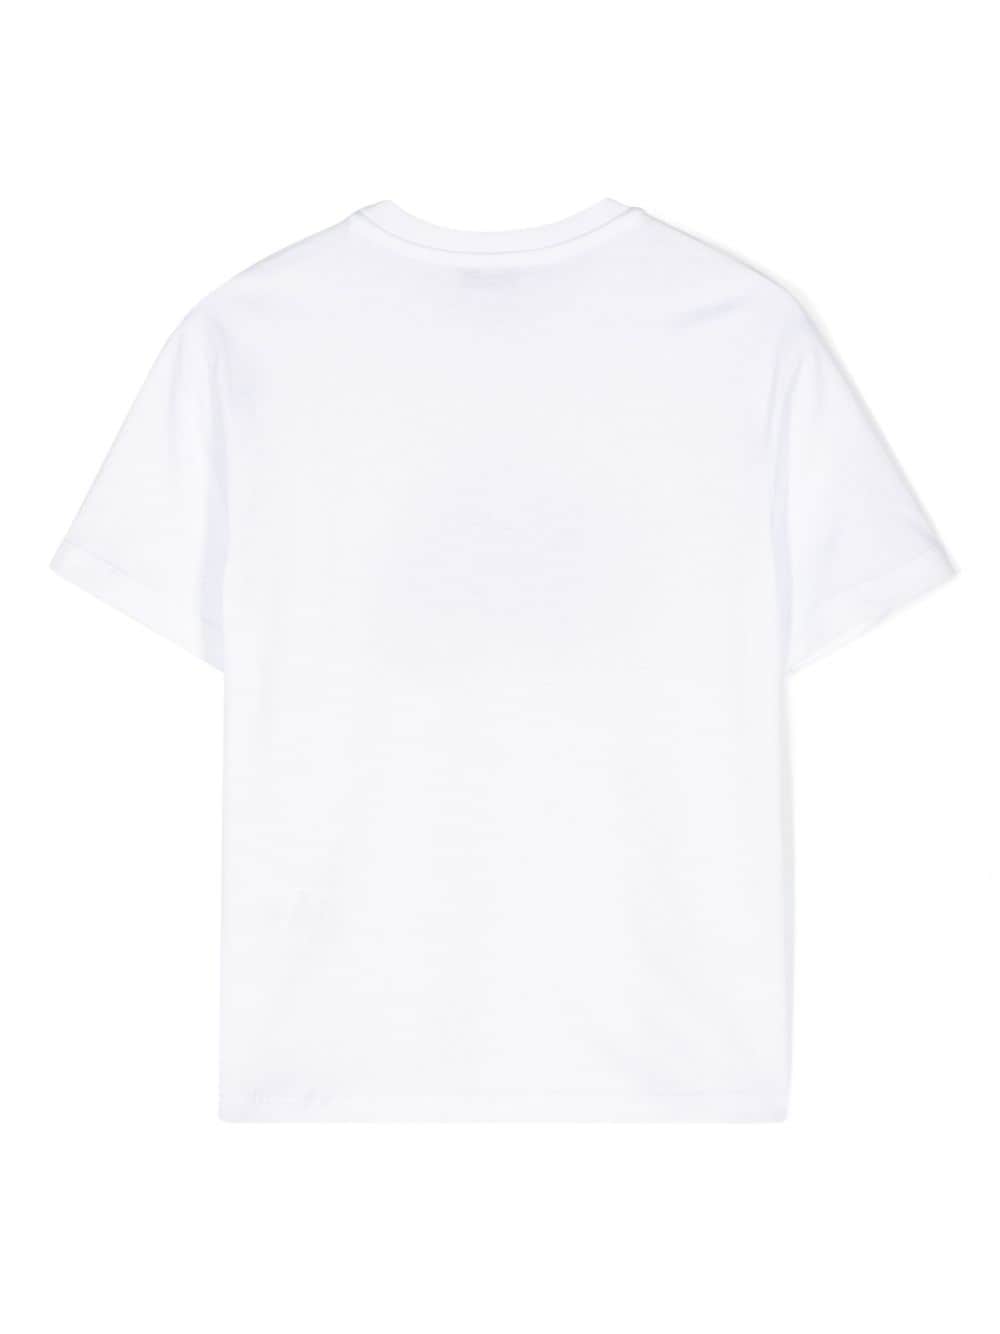 T-shirt per bambino in cotone bianco